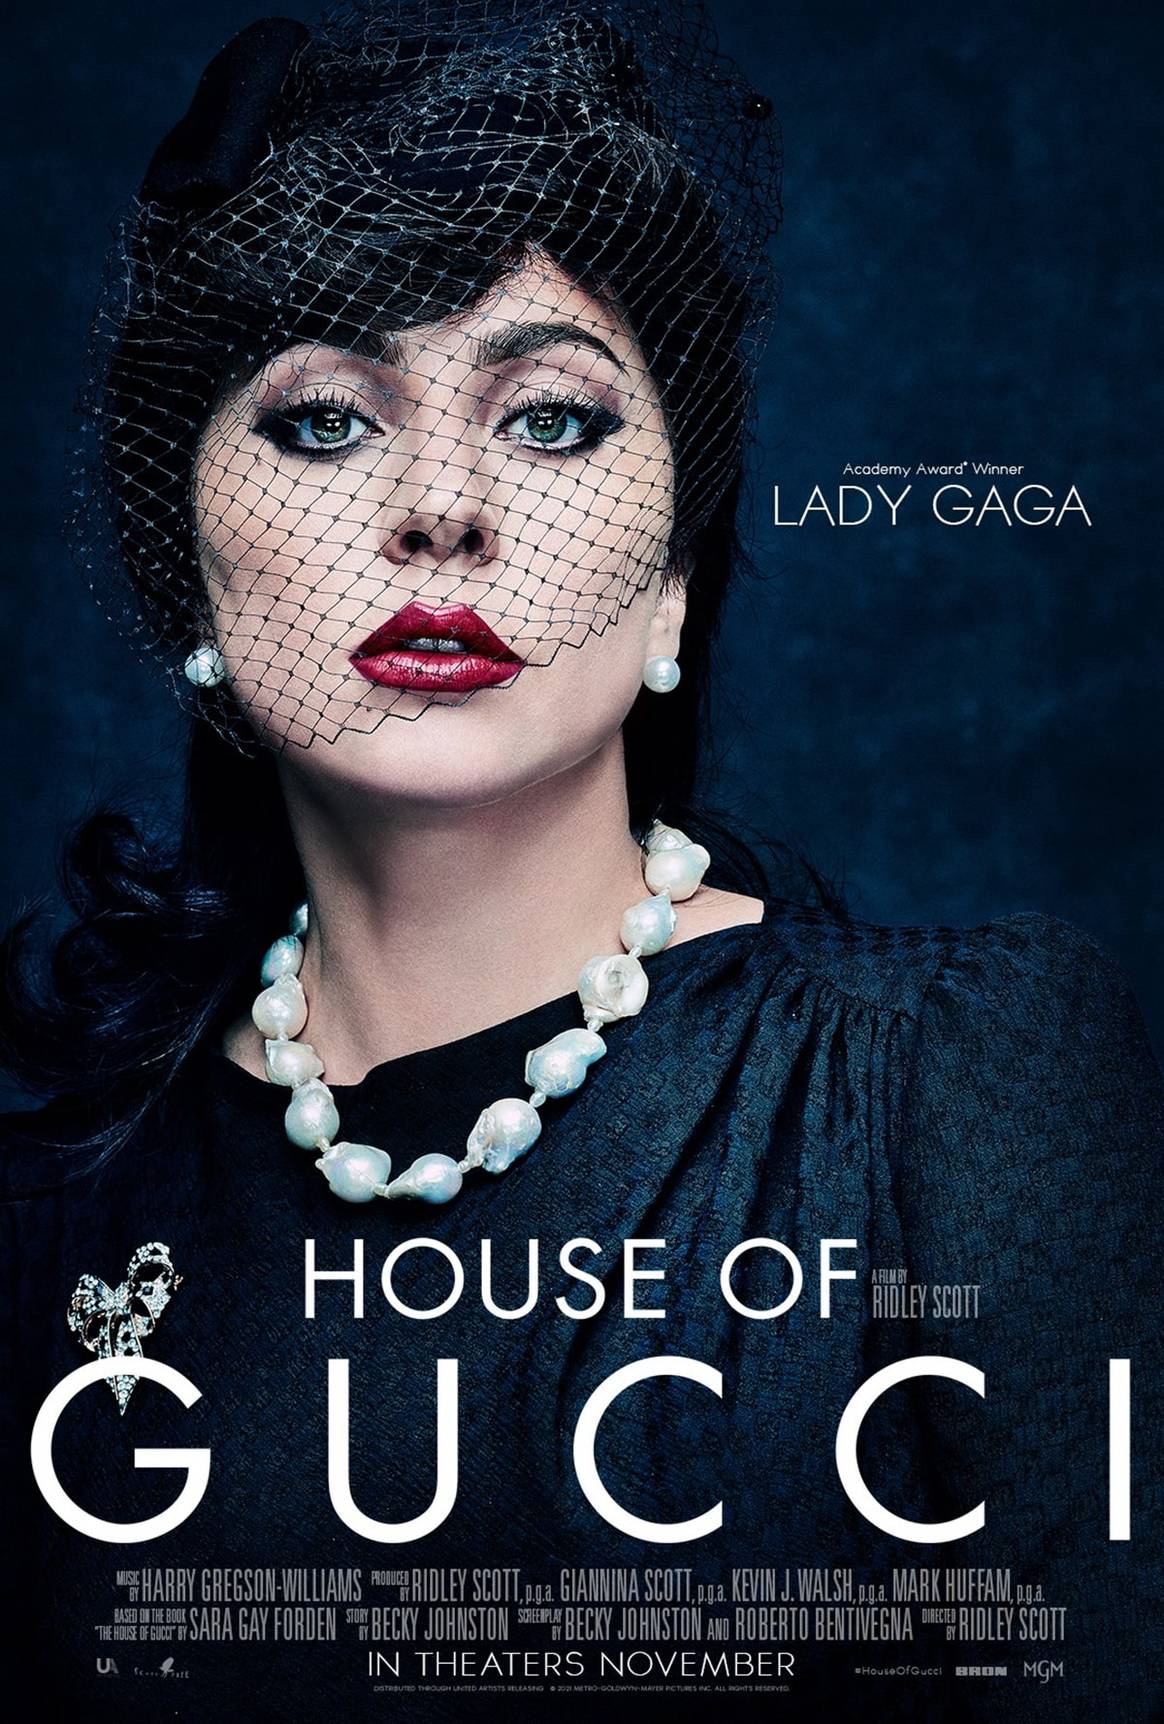 Primeras imágenes y tráiler de “House of Gucci”: con Lady Gaga, Adam Driver, Al Pacino, Salma Hayek…